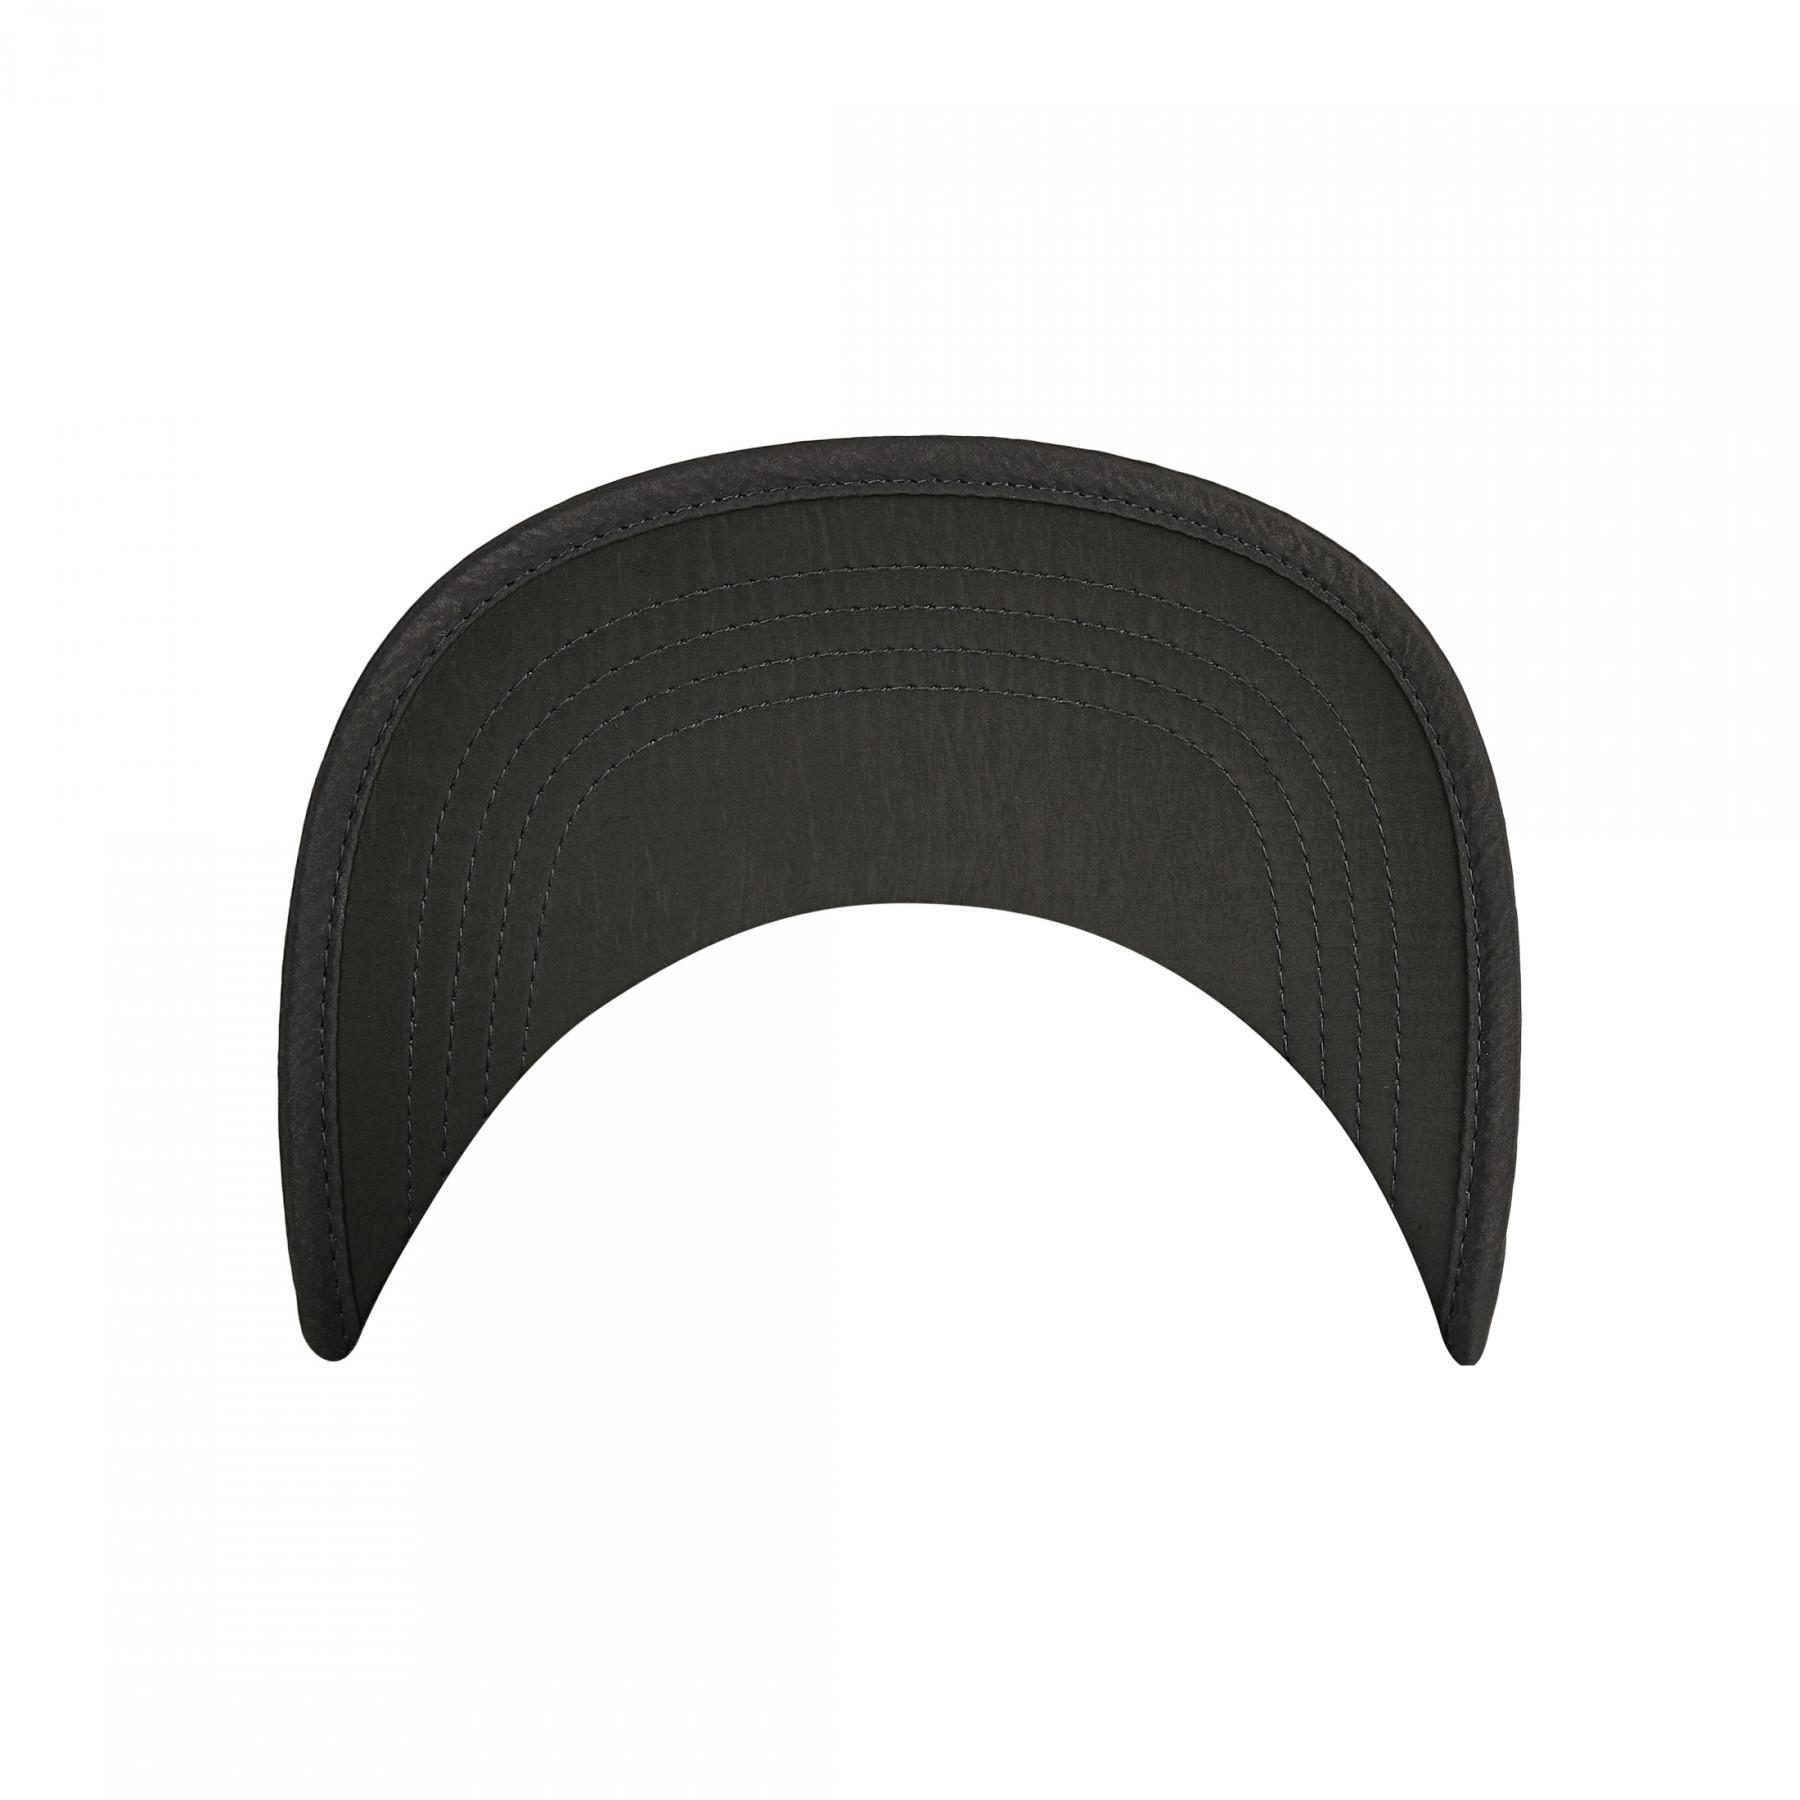 Urban Classic adjustable nylon cap